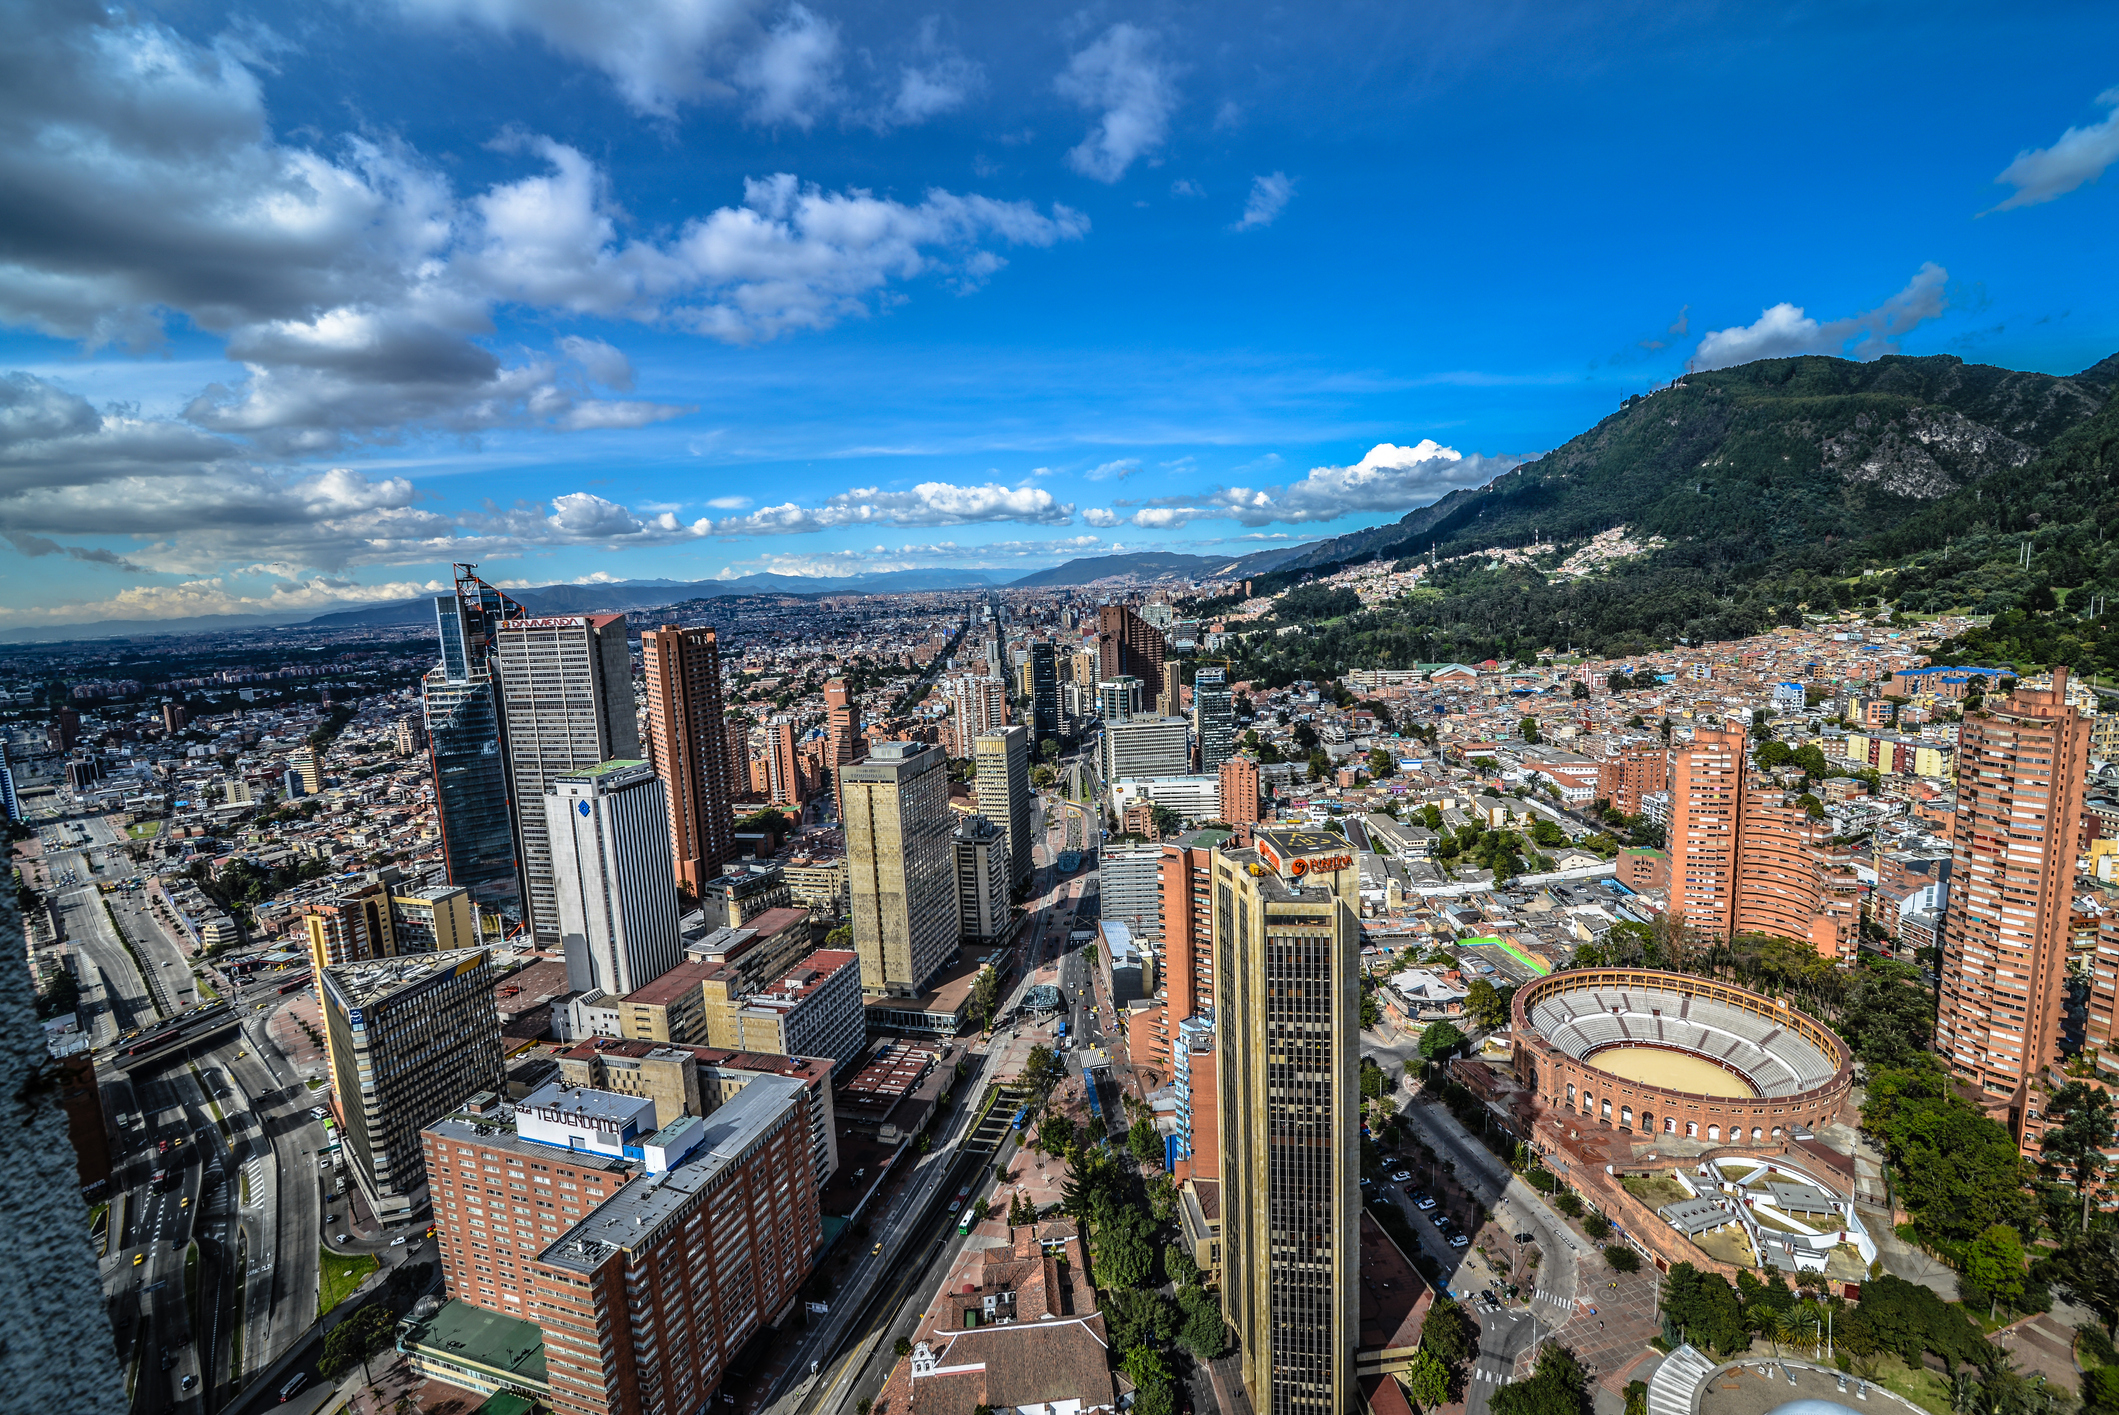 Aerial view of Bogota and Torres del Parque